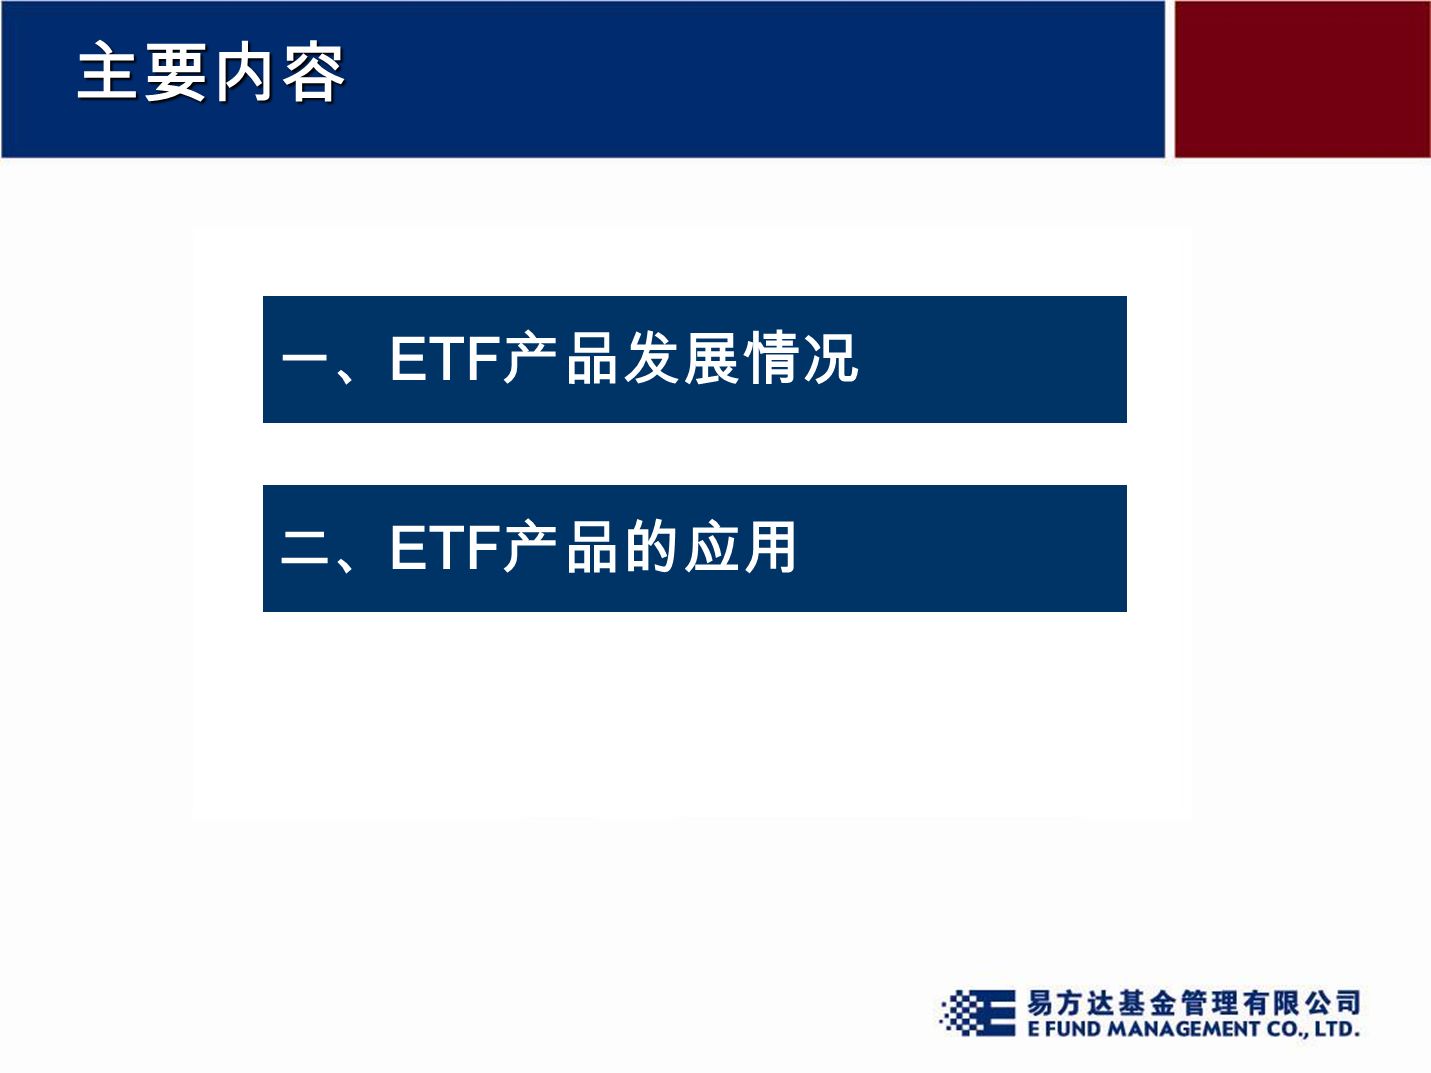 主要内容 一、 ETF 产品发展情况 二、 ETF 产品的应用